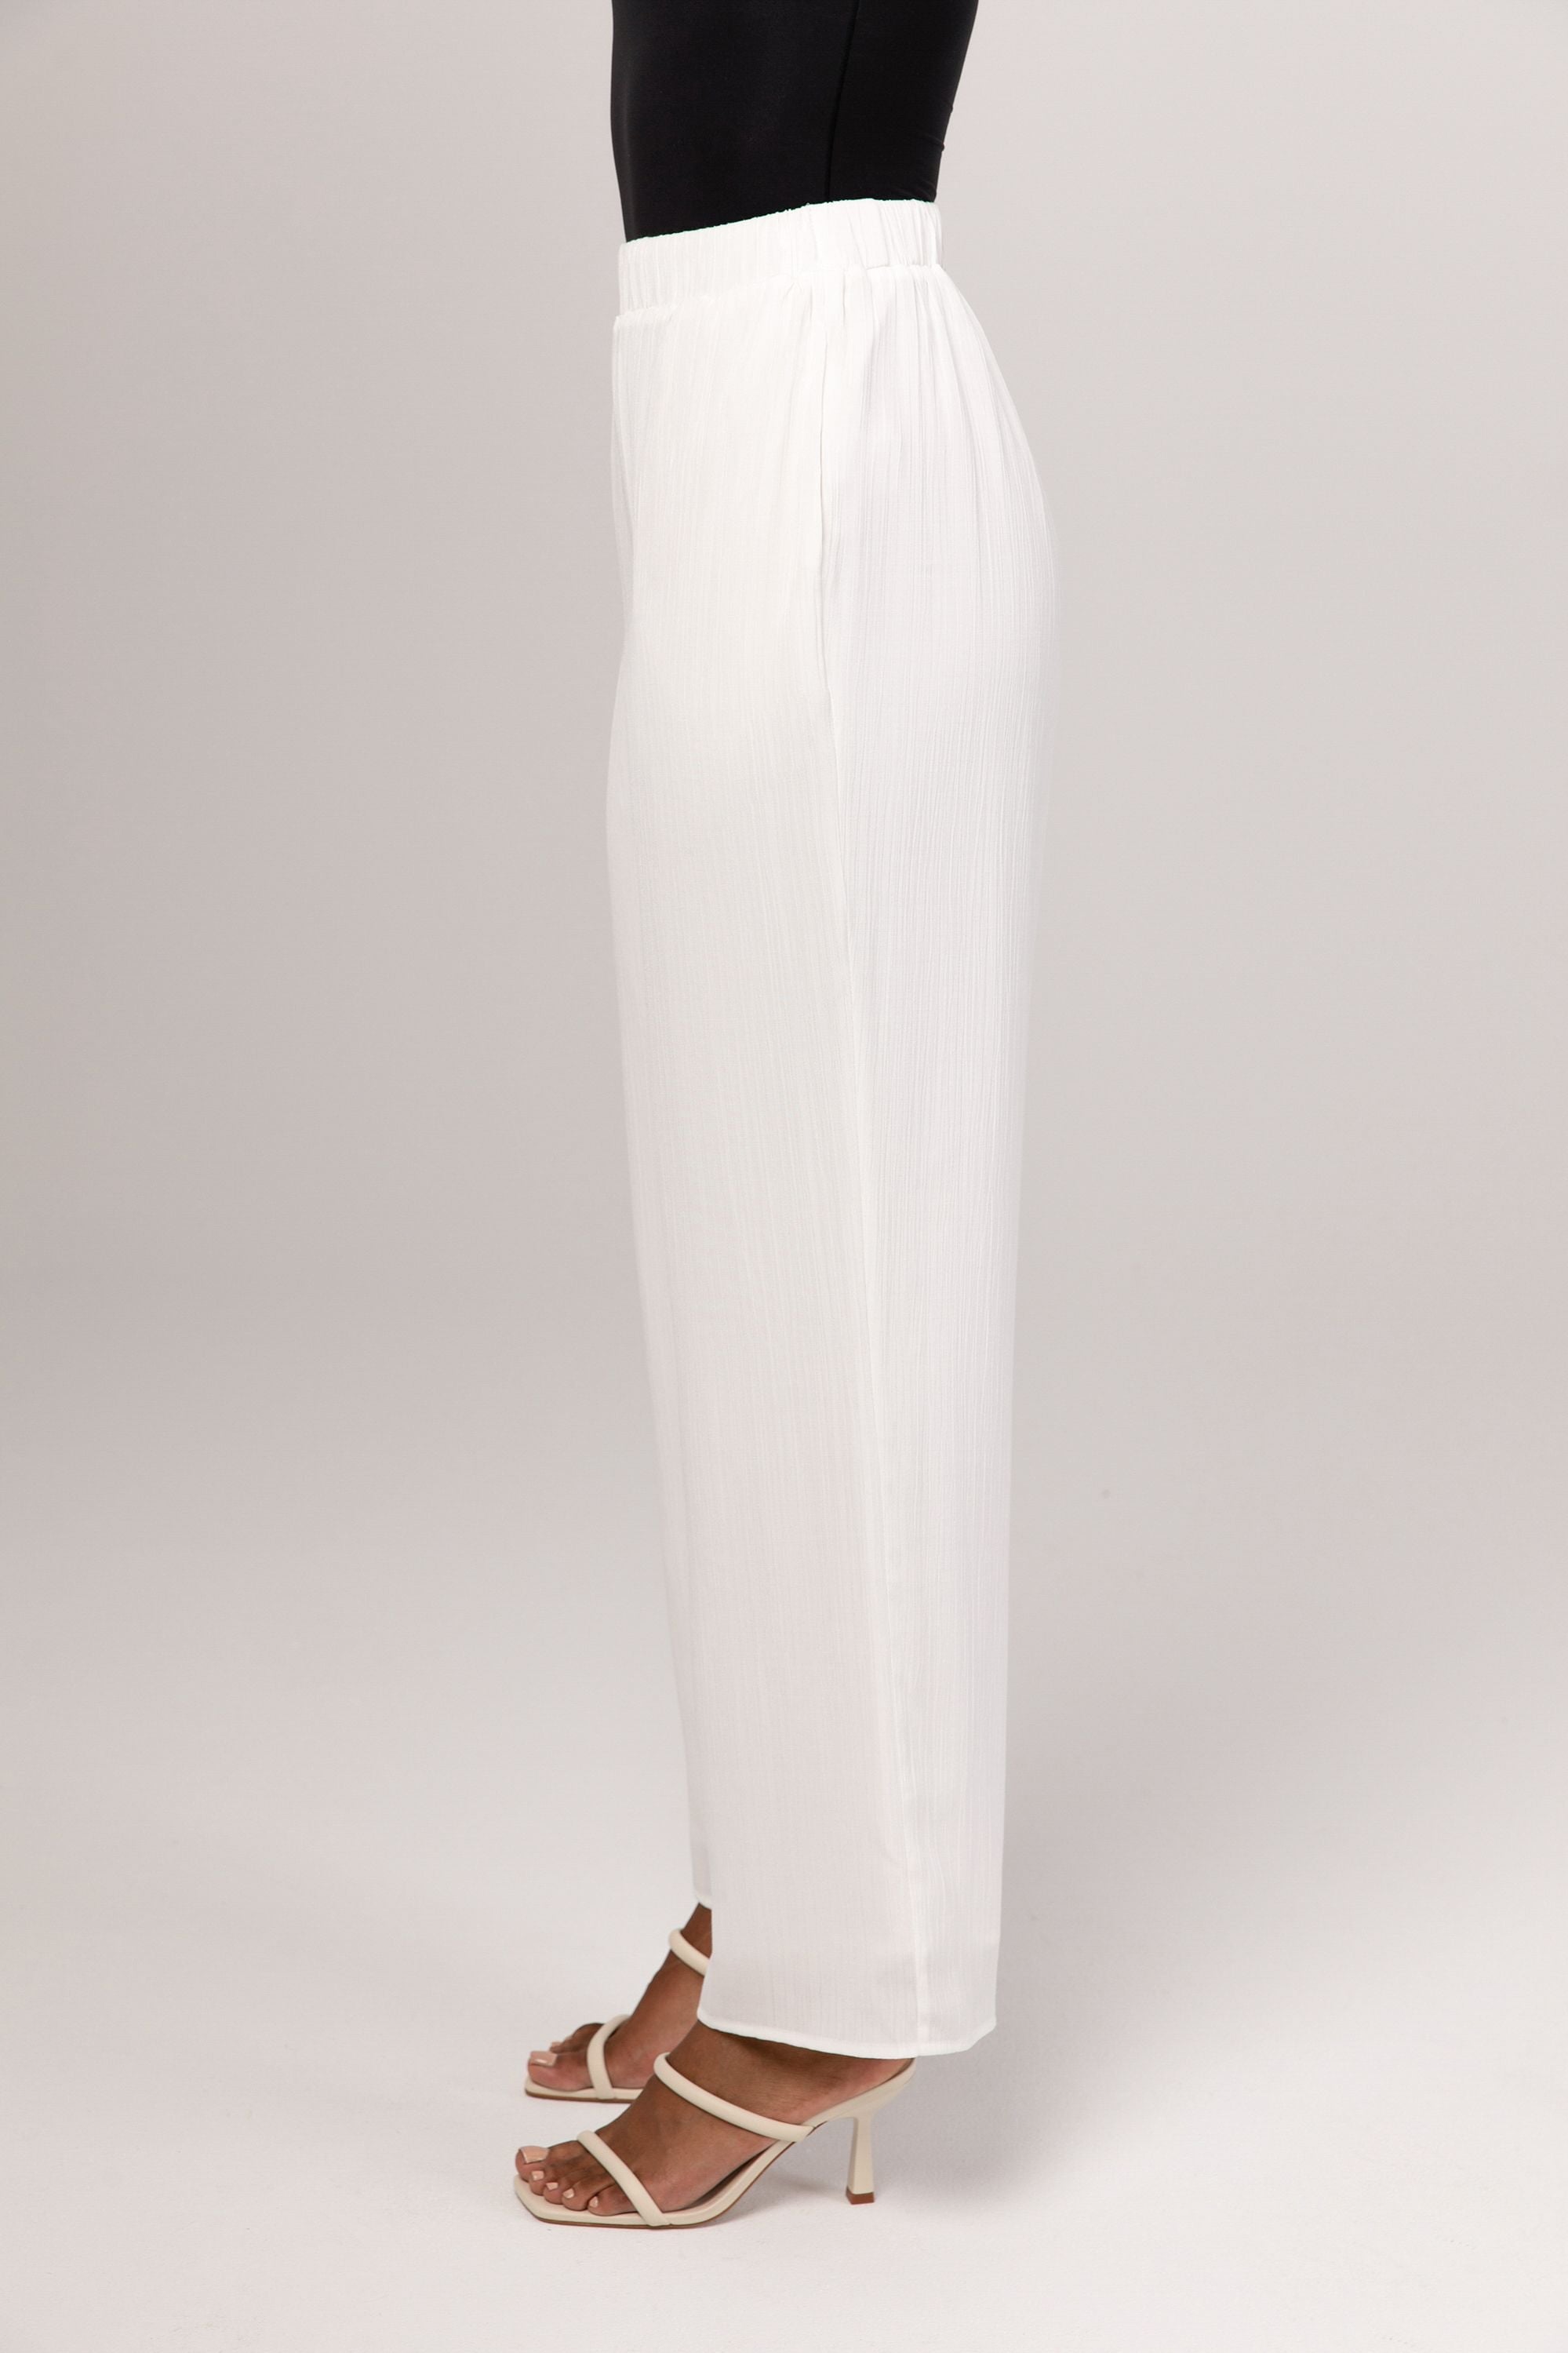 Nashwa Textured Rayon Wide Leg Pants - White Veiled 